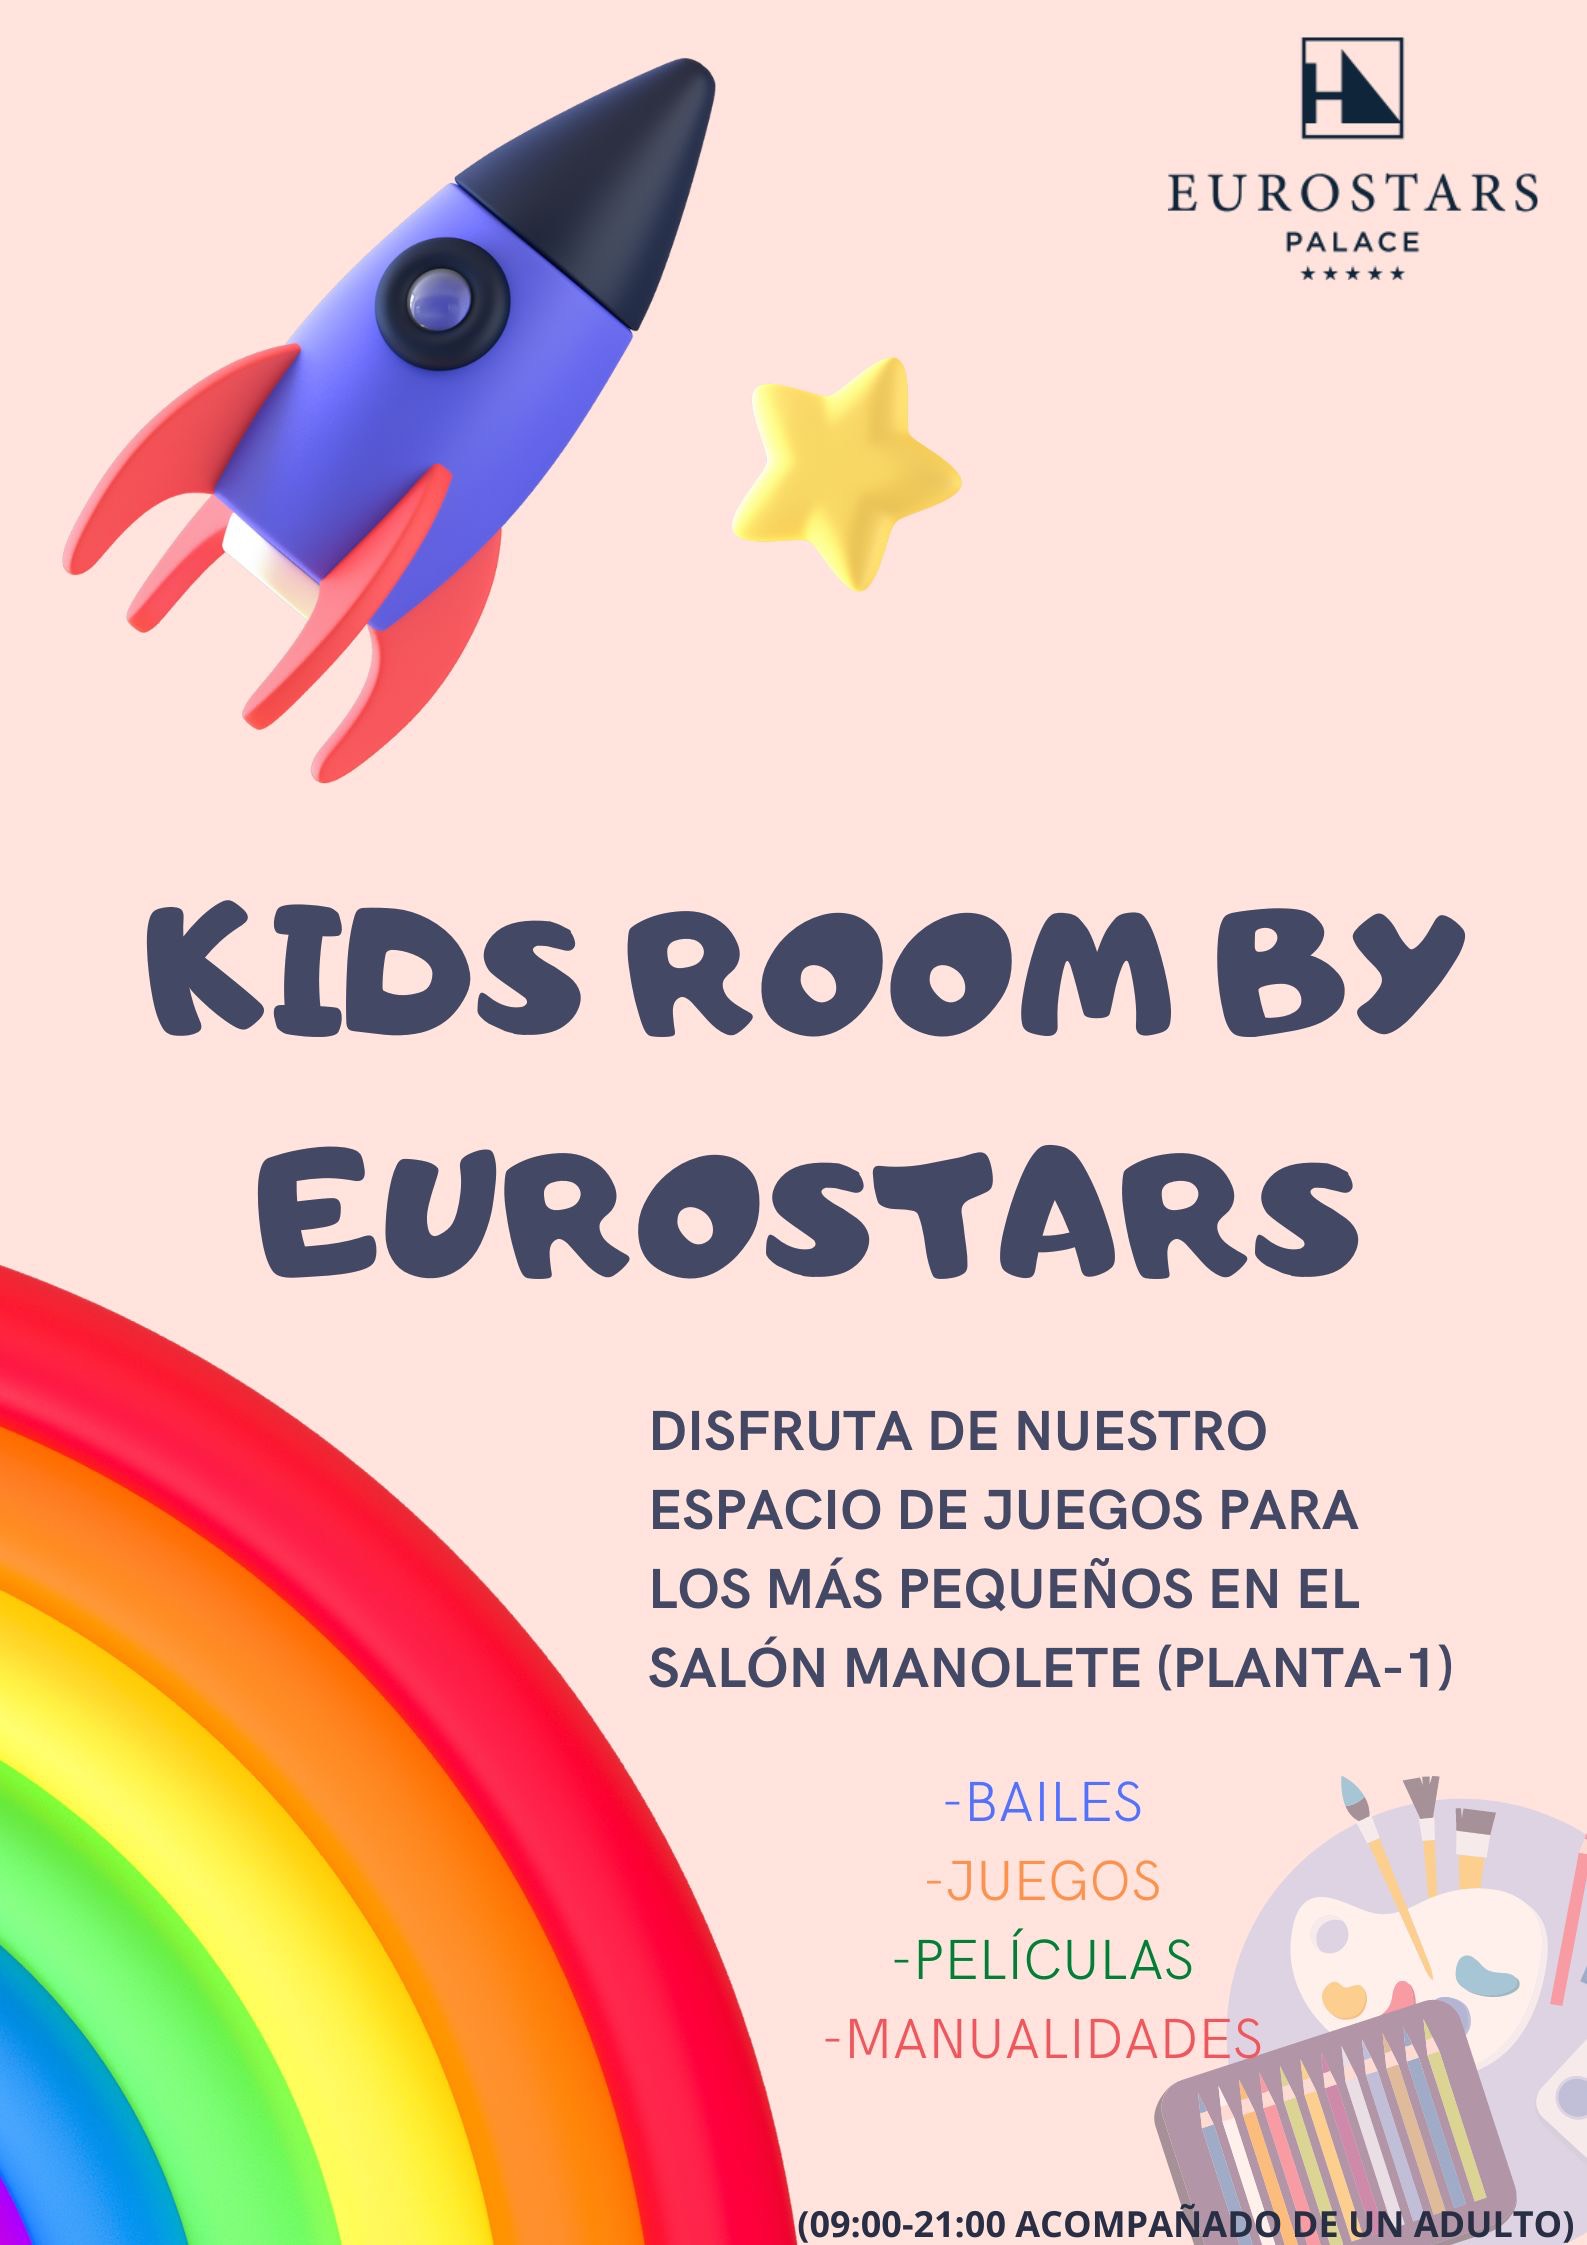 Kid croom by Eurostars